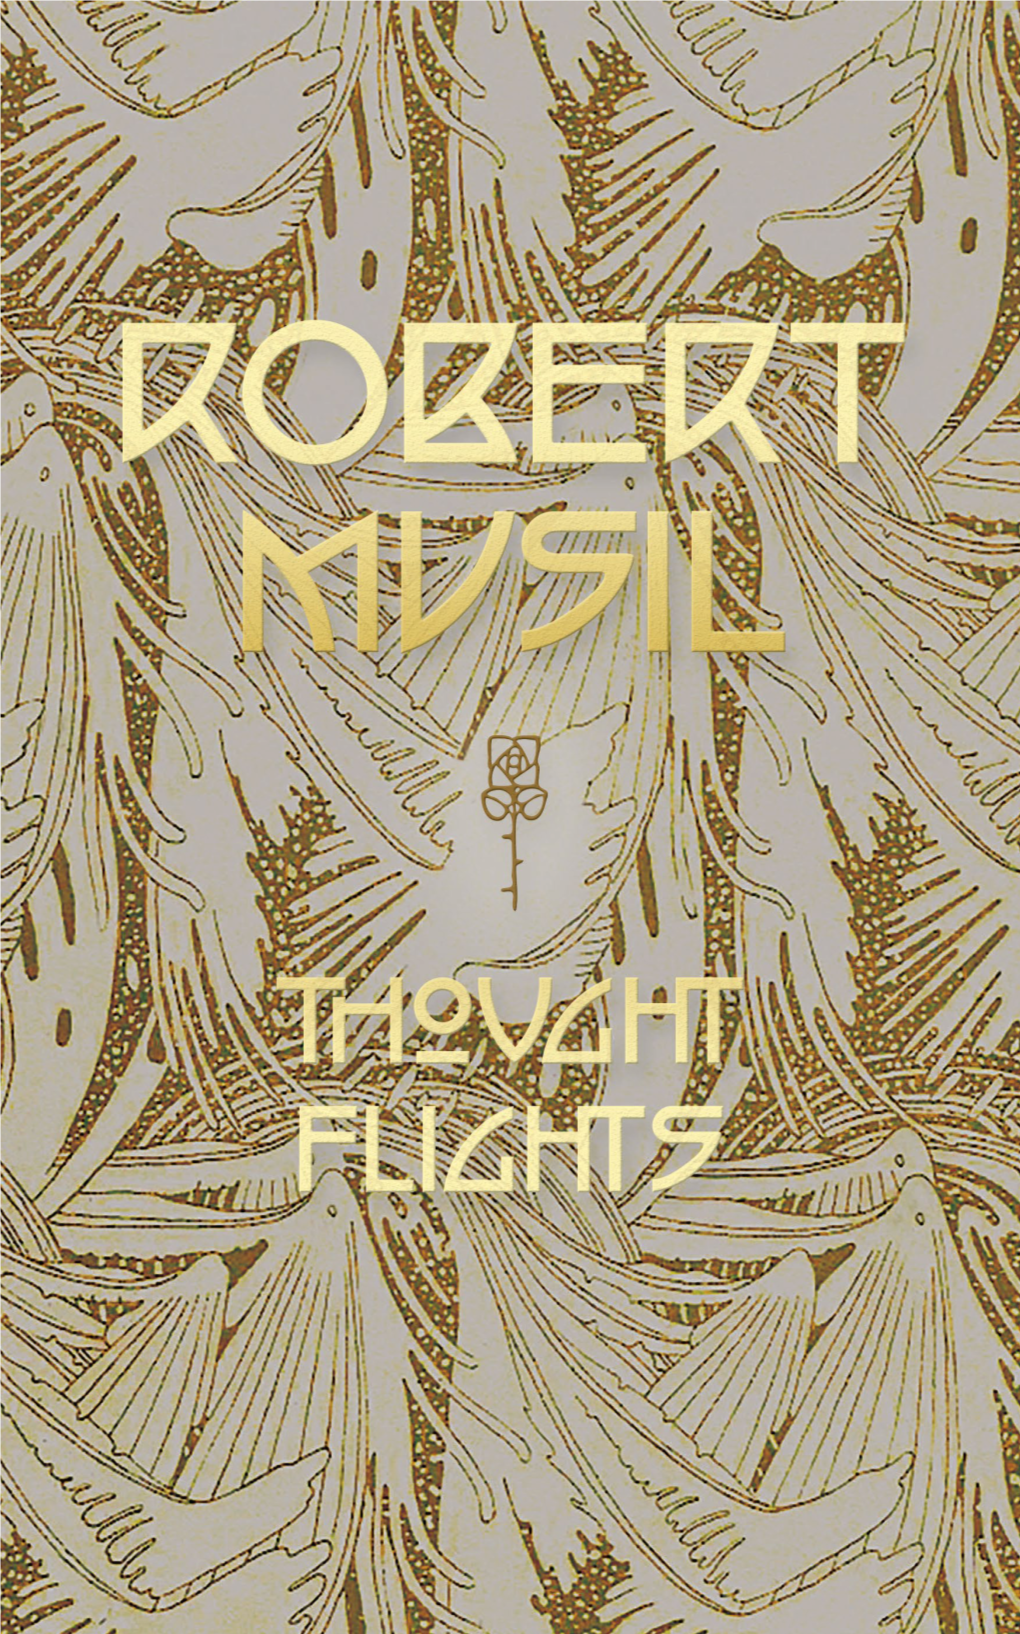 Thought Flights / Robert Musil